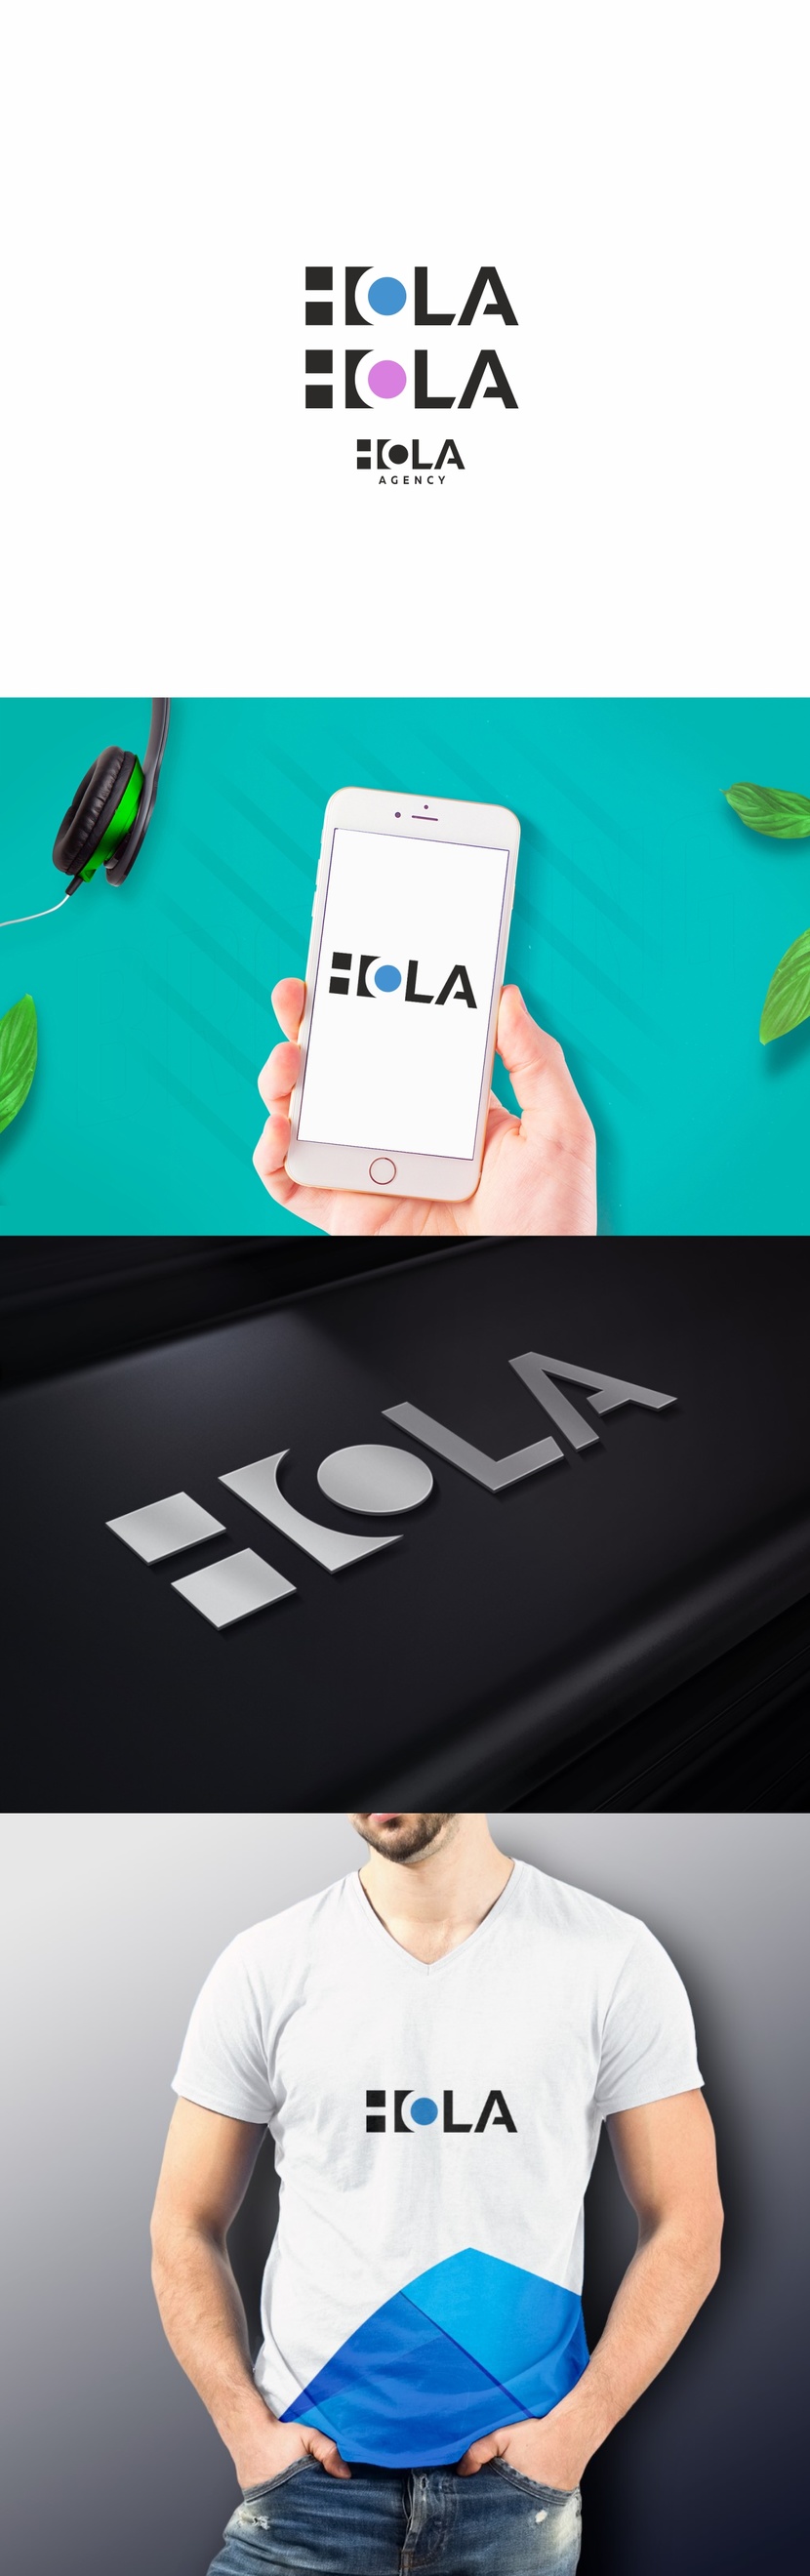 1 - Разработка логотипа для SMM-агентства "HOLA"